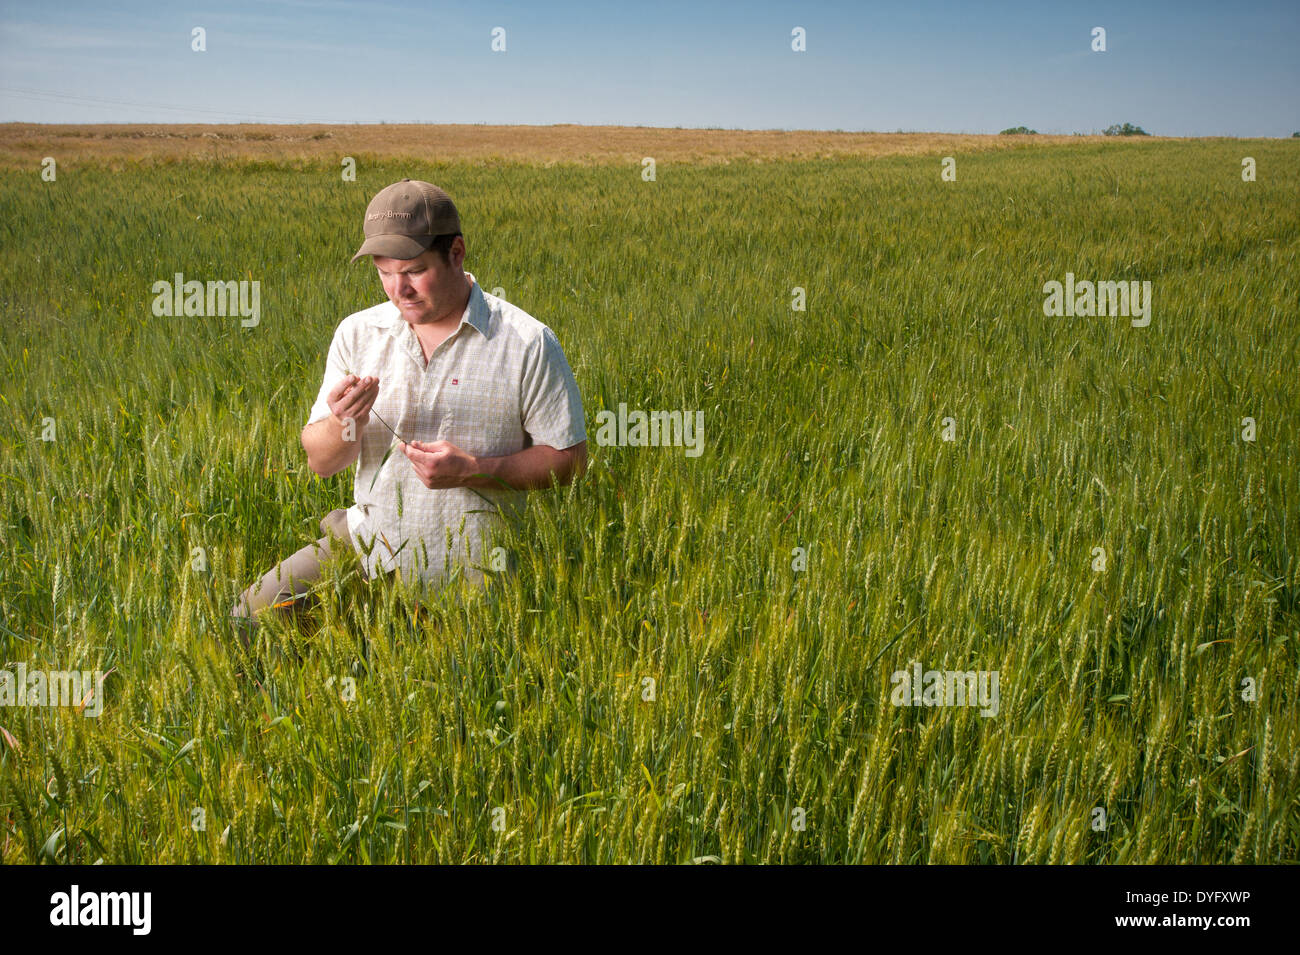 Farmer in Field of Wheat Grain producer, Cordova MD Stock Photo